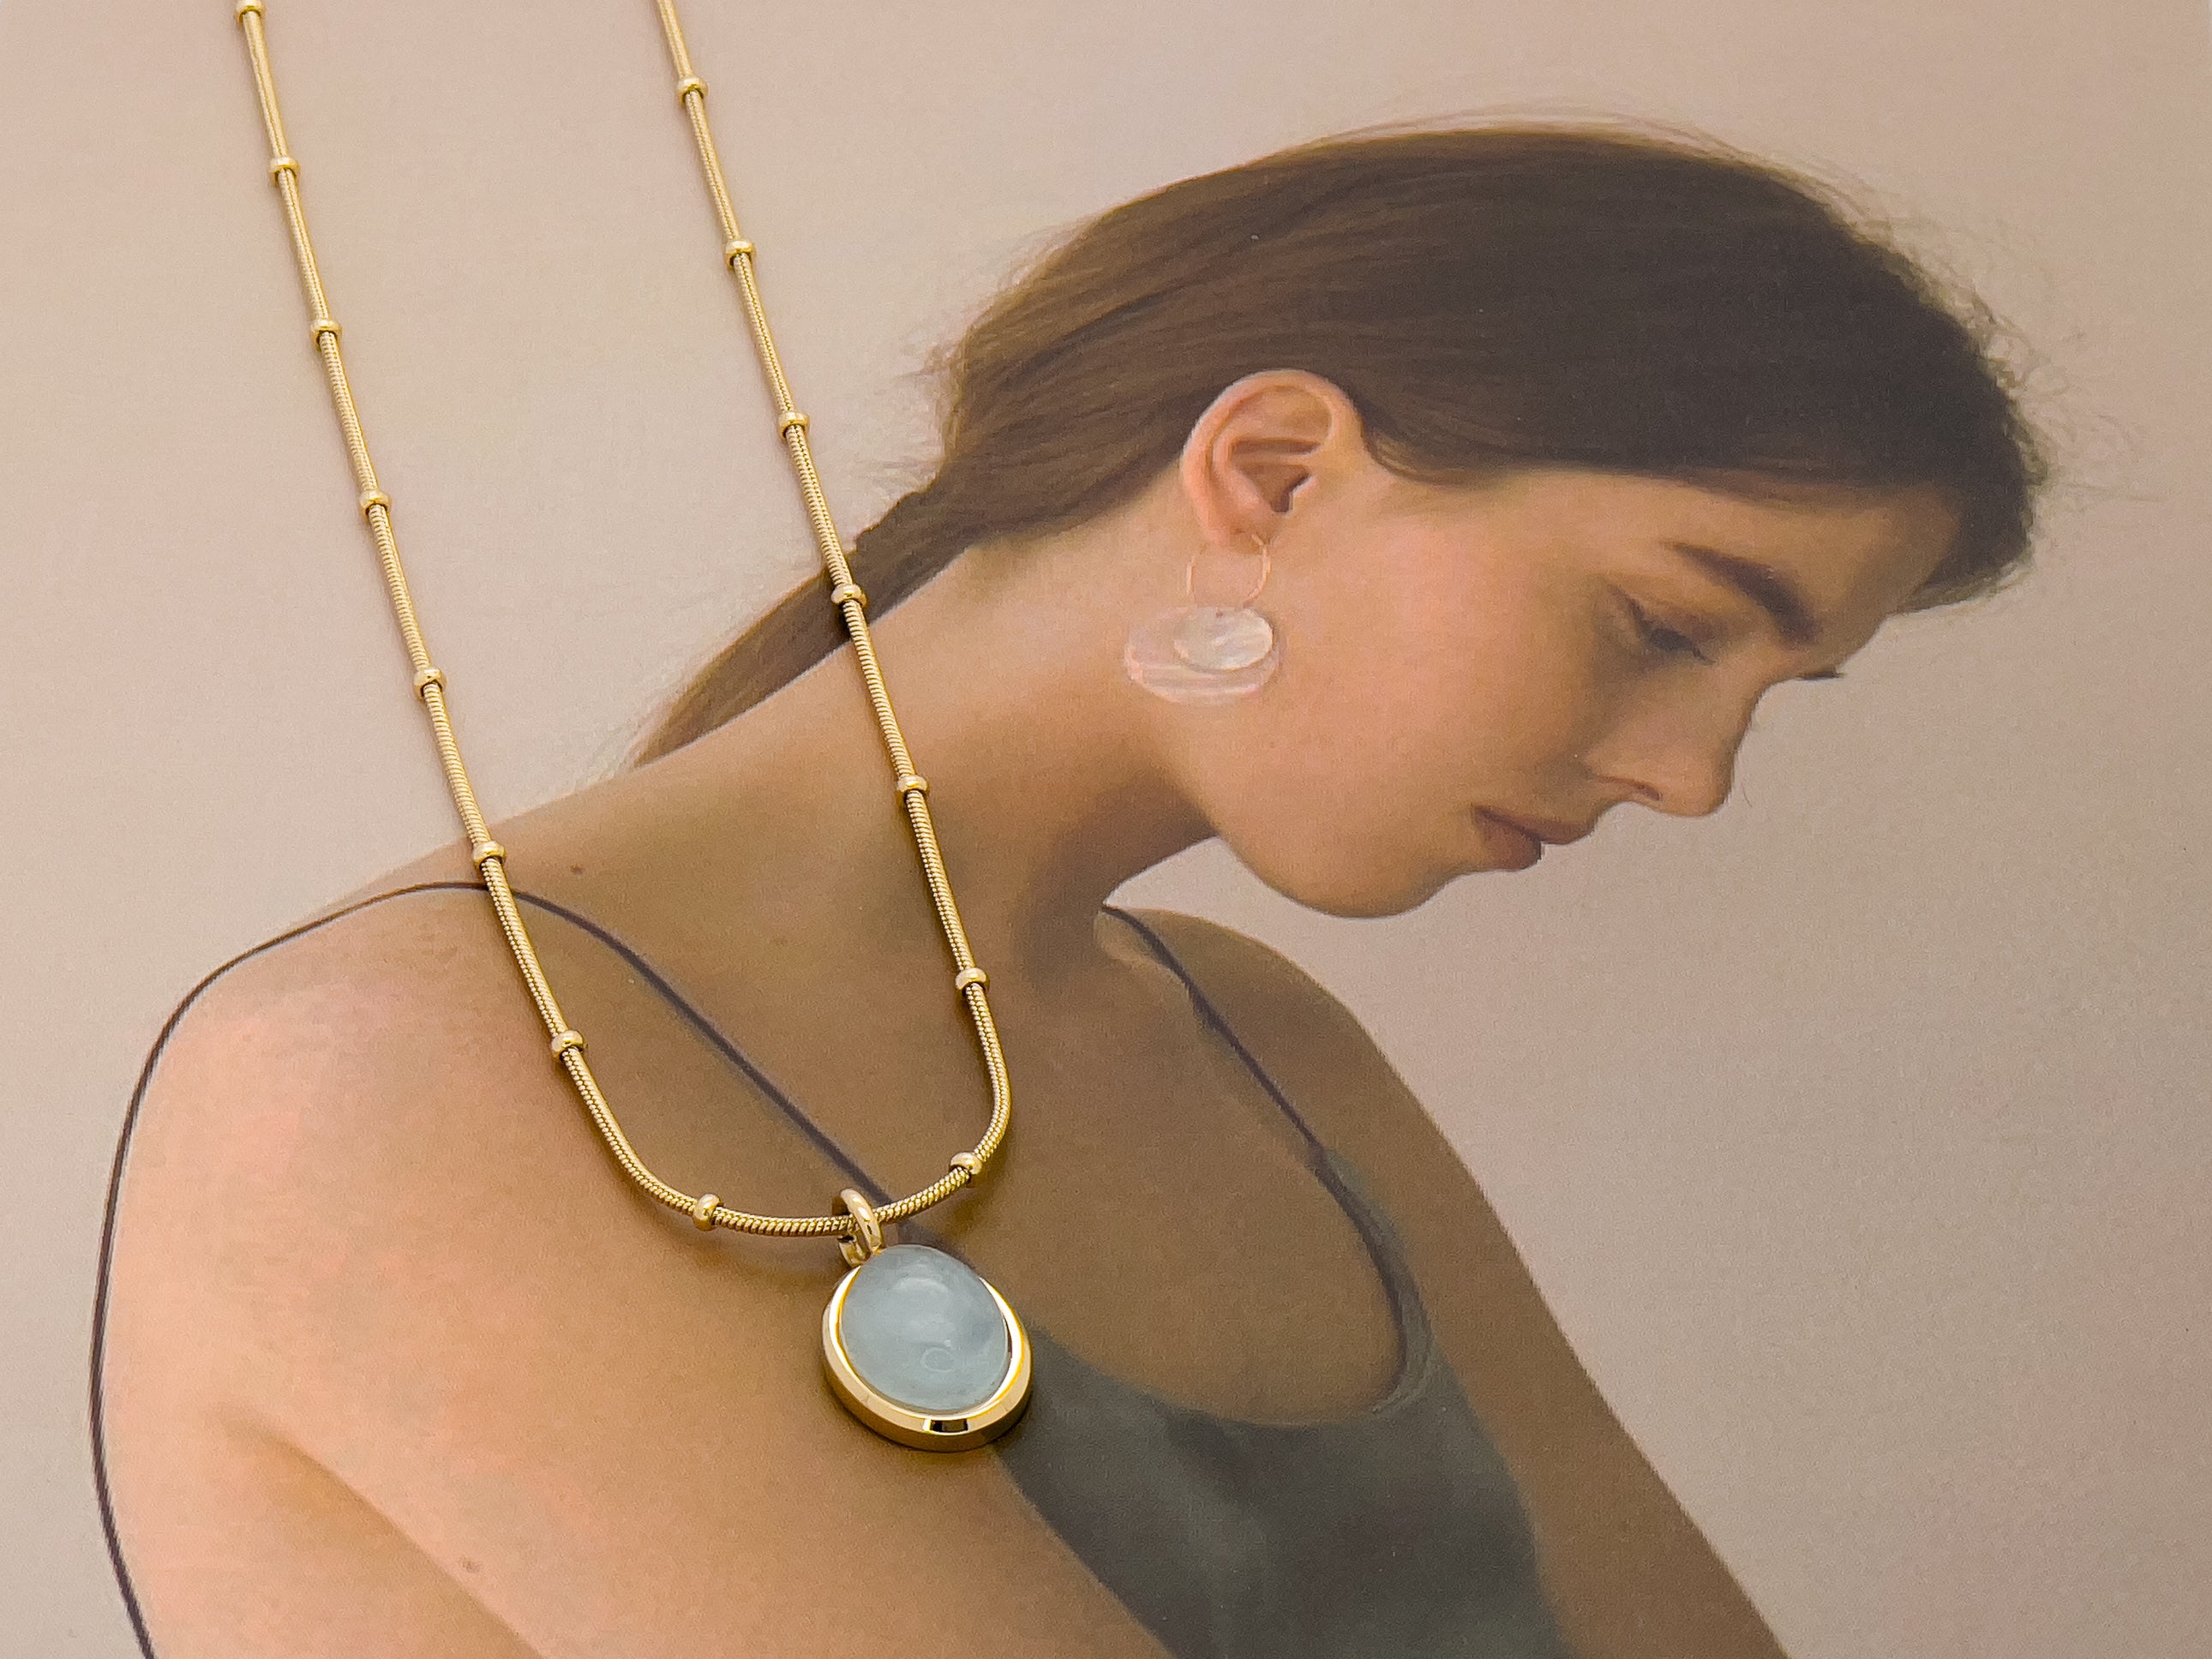 Aqua blue gem stone necklace